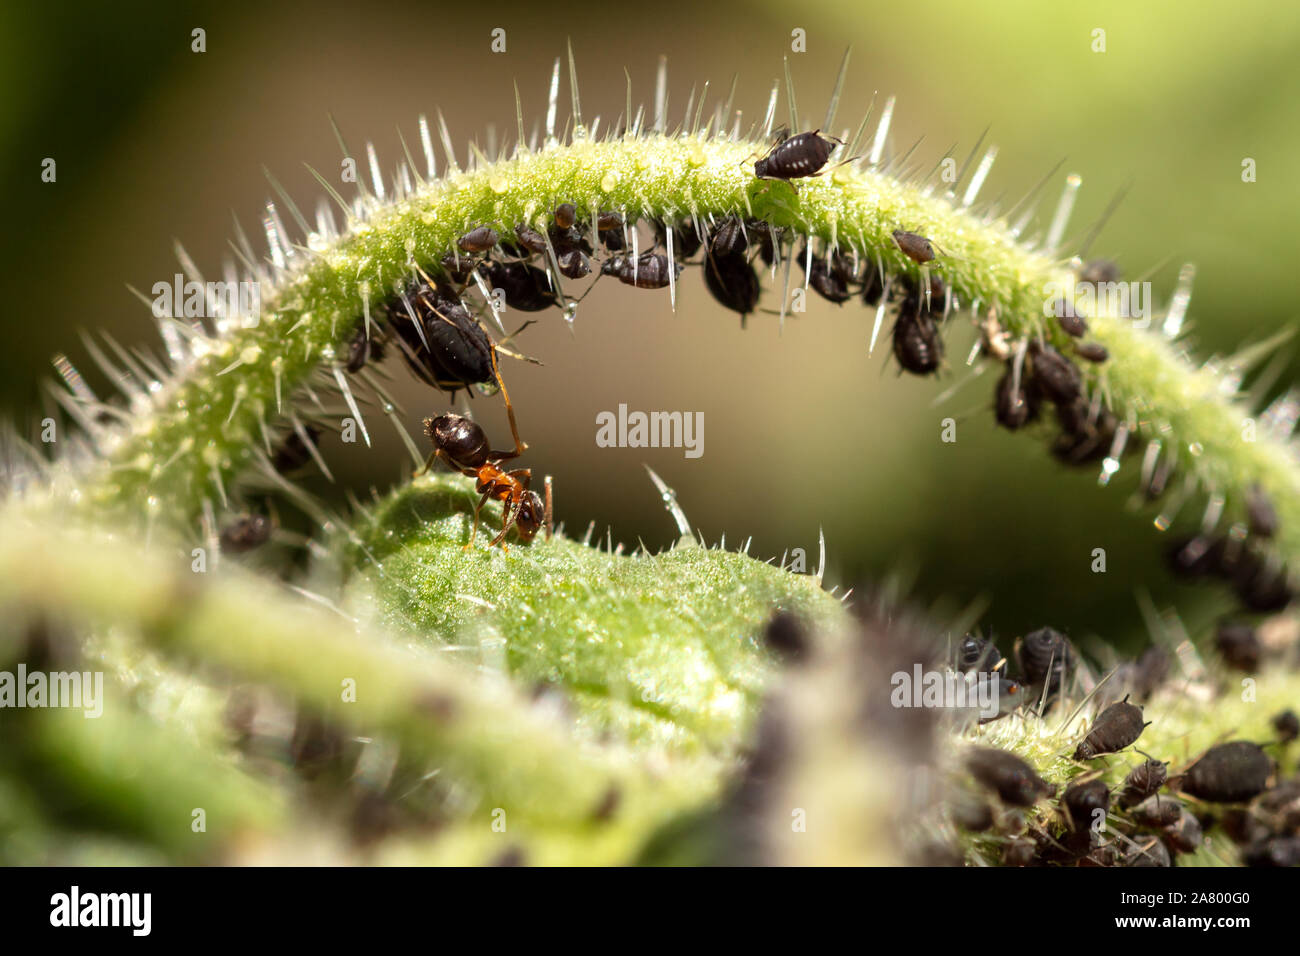 Blattläuse und Ameisen auf einer grünen Pflanze, Symbiose und Zusammenleben wildlife von Insekten, Nahaufnahme Stockfoto